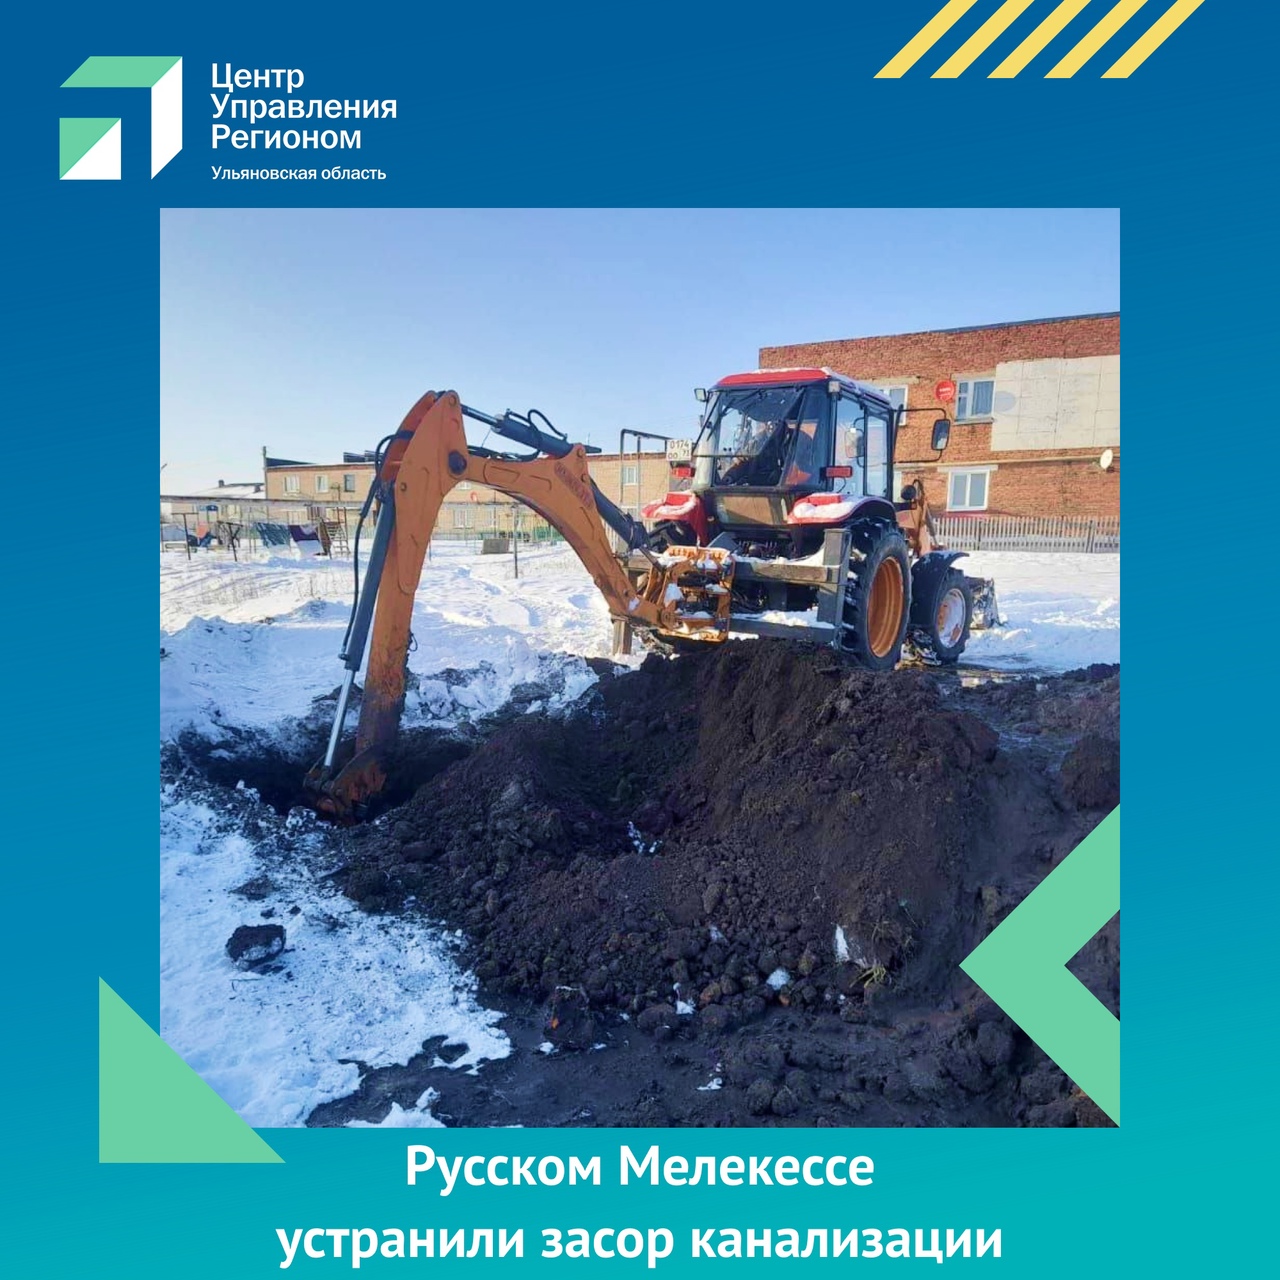 В Русском Мелекессе устранили засор канализации.